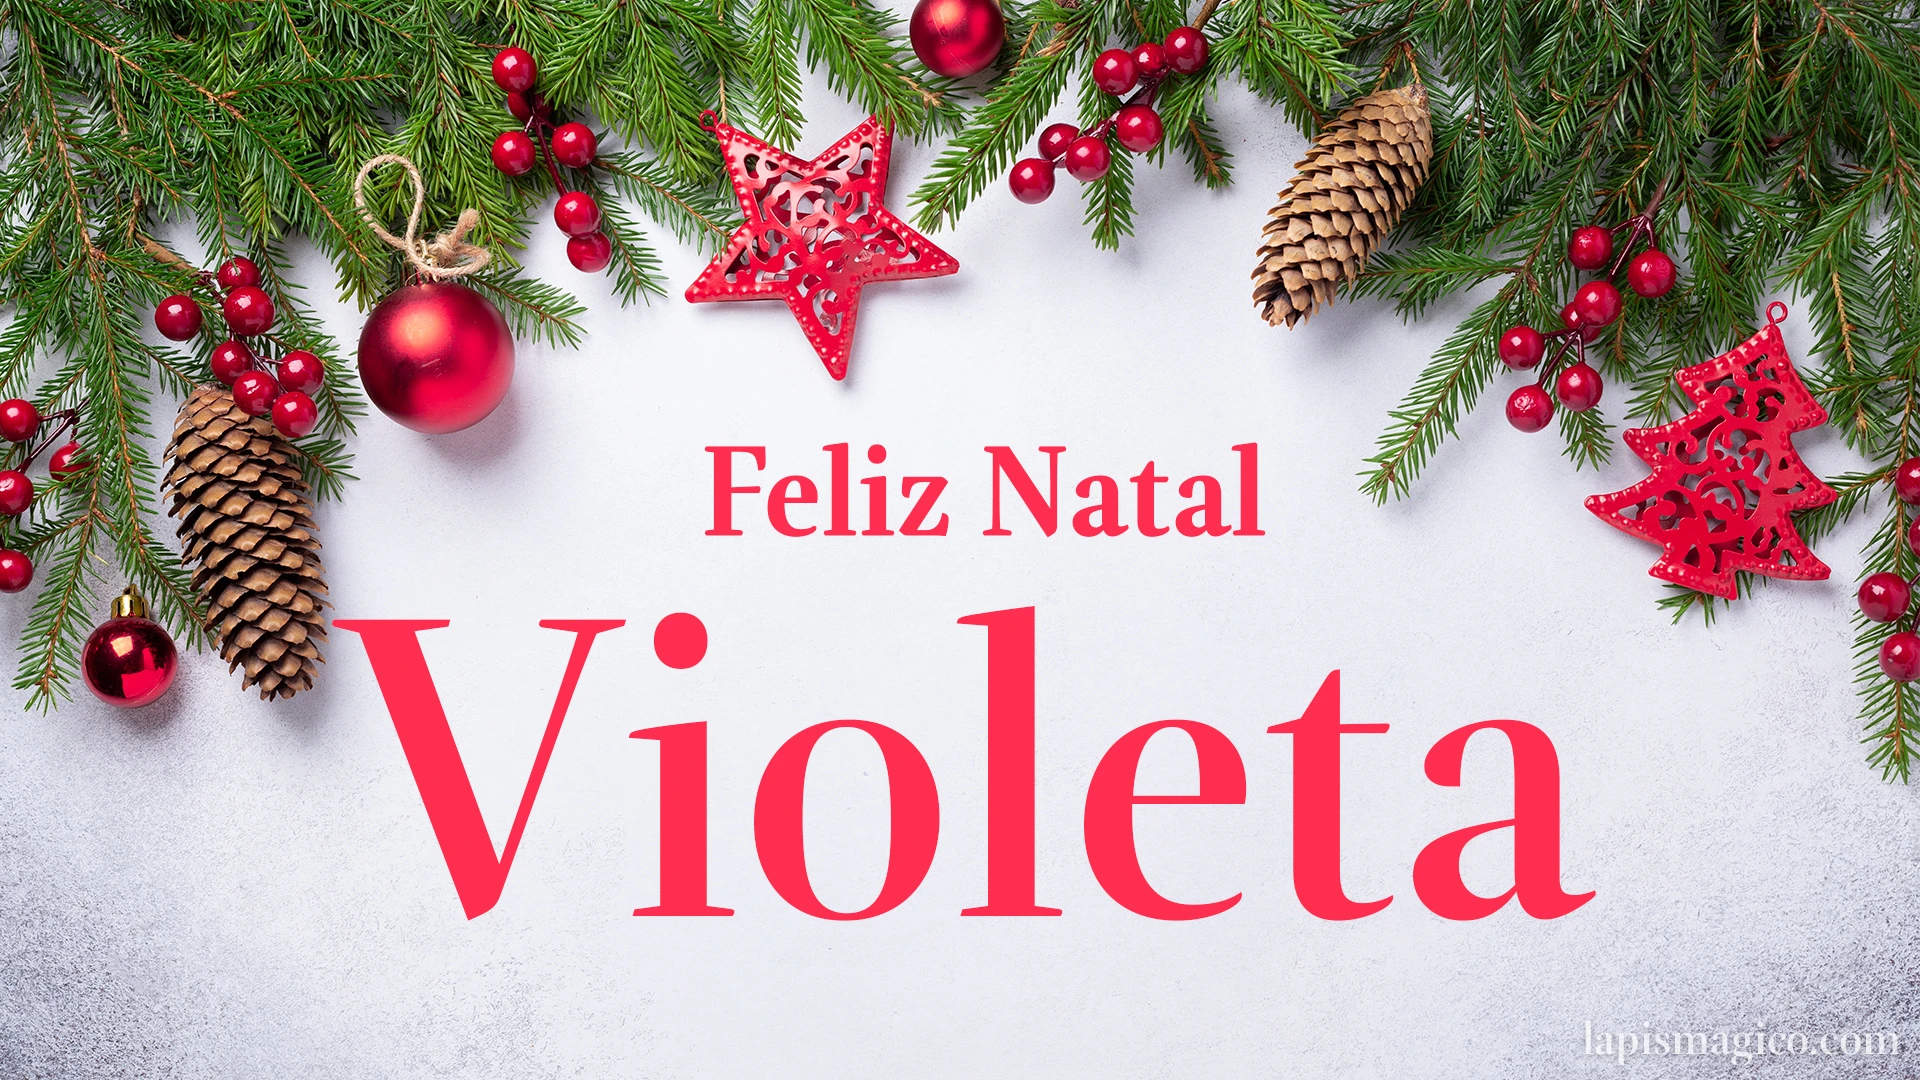 Oh Violeta, cinco postais de Feliz Natal Postal com o teu nome